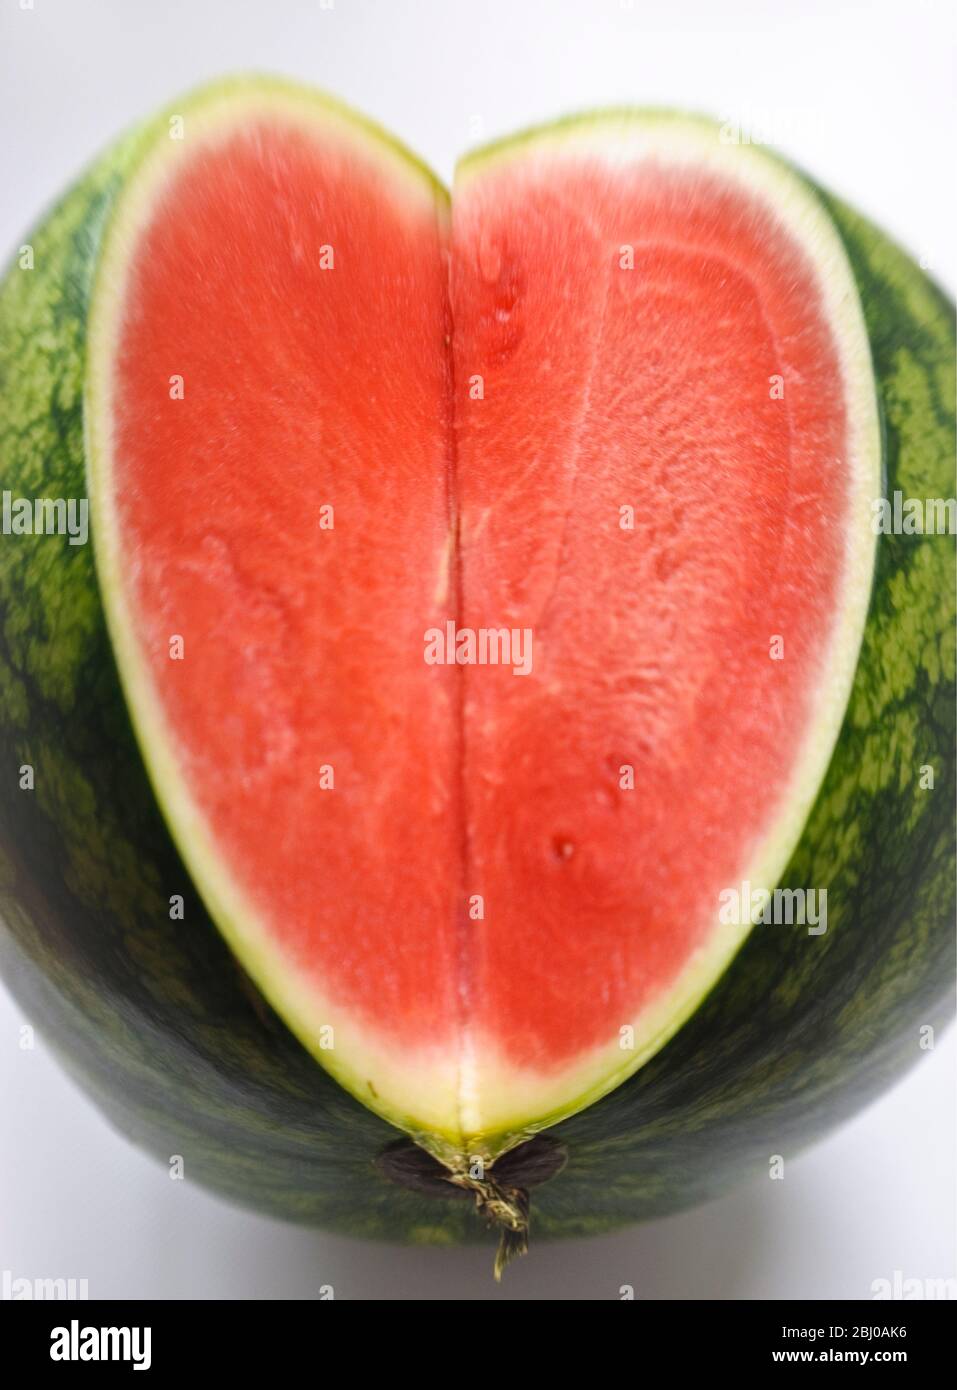 Schnitt Gesicht Wassermelone zeigt Fleisch und Samen im Inneren - Stockfoto